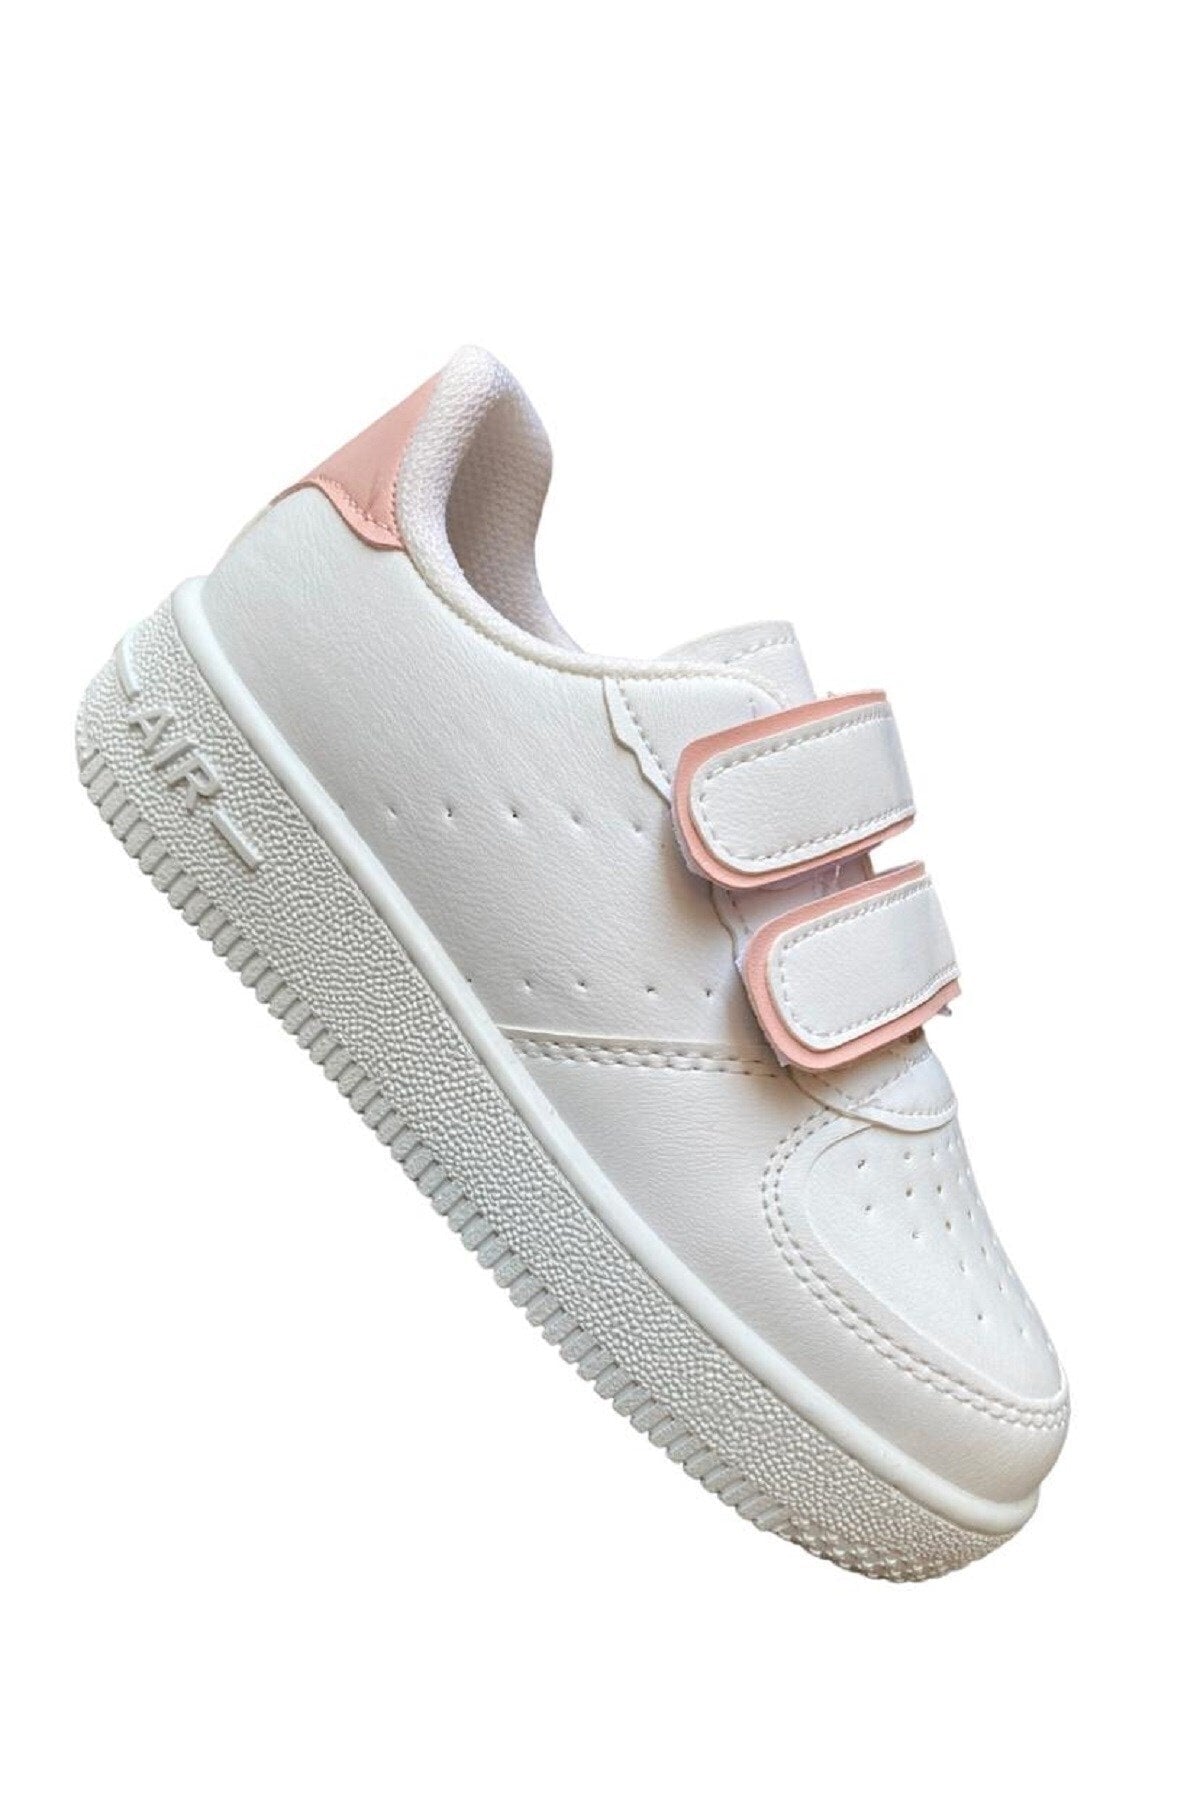 Unisex Boys Girls Velcro Sneakers Sneaker - White Powder